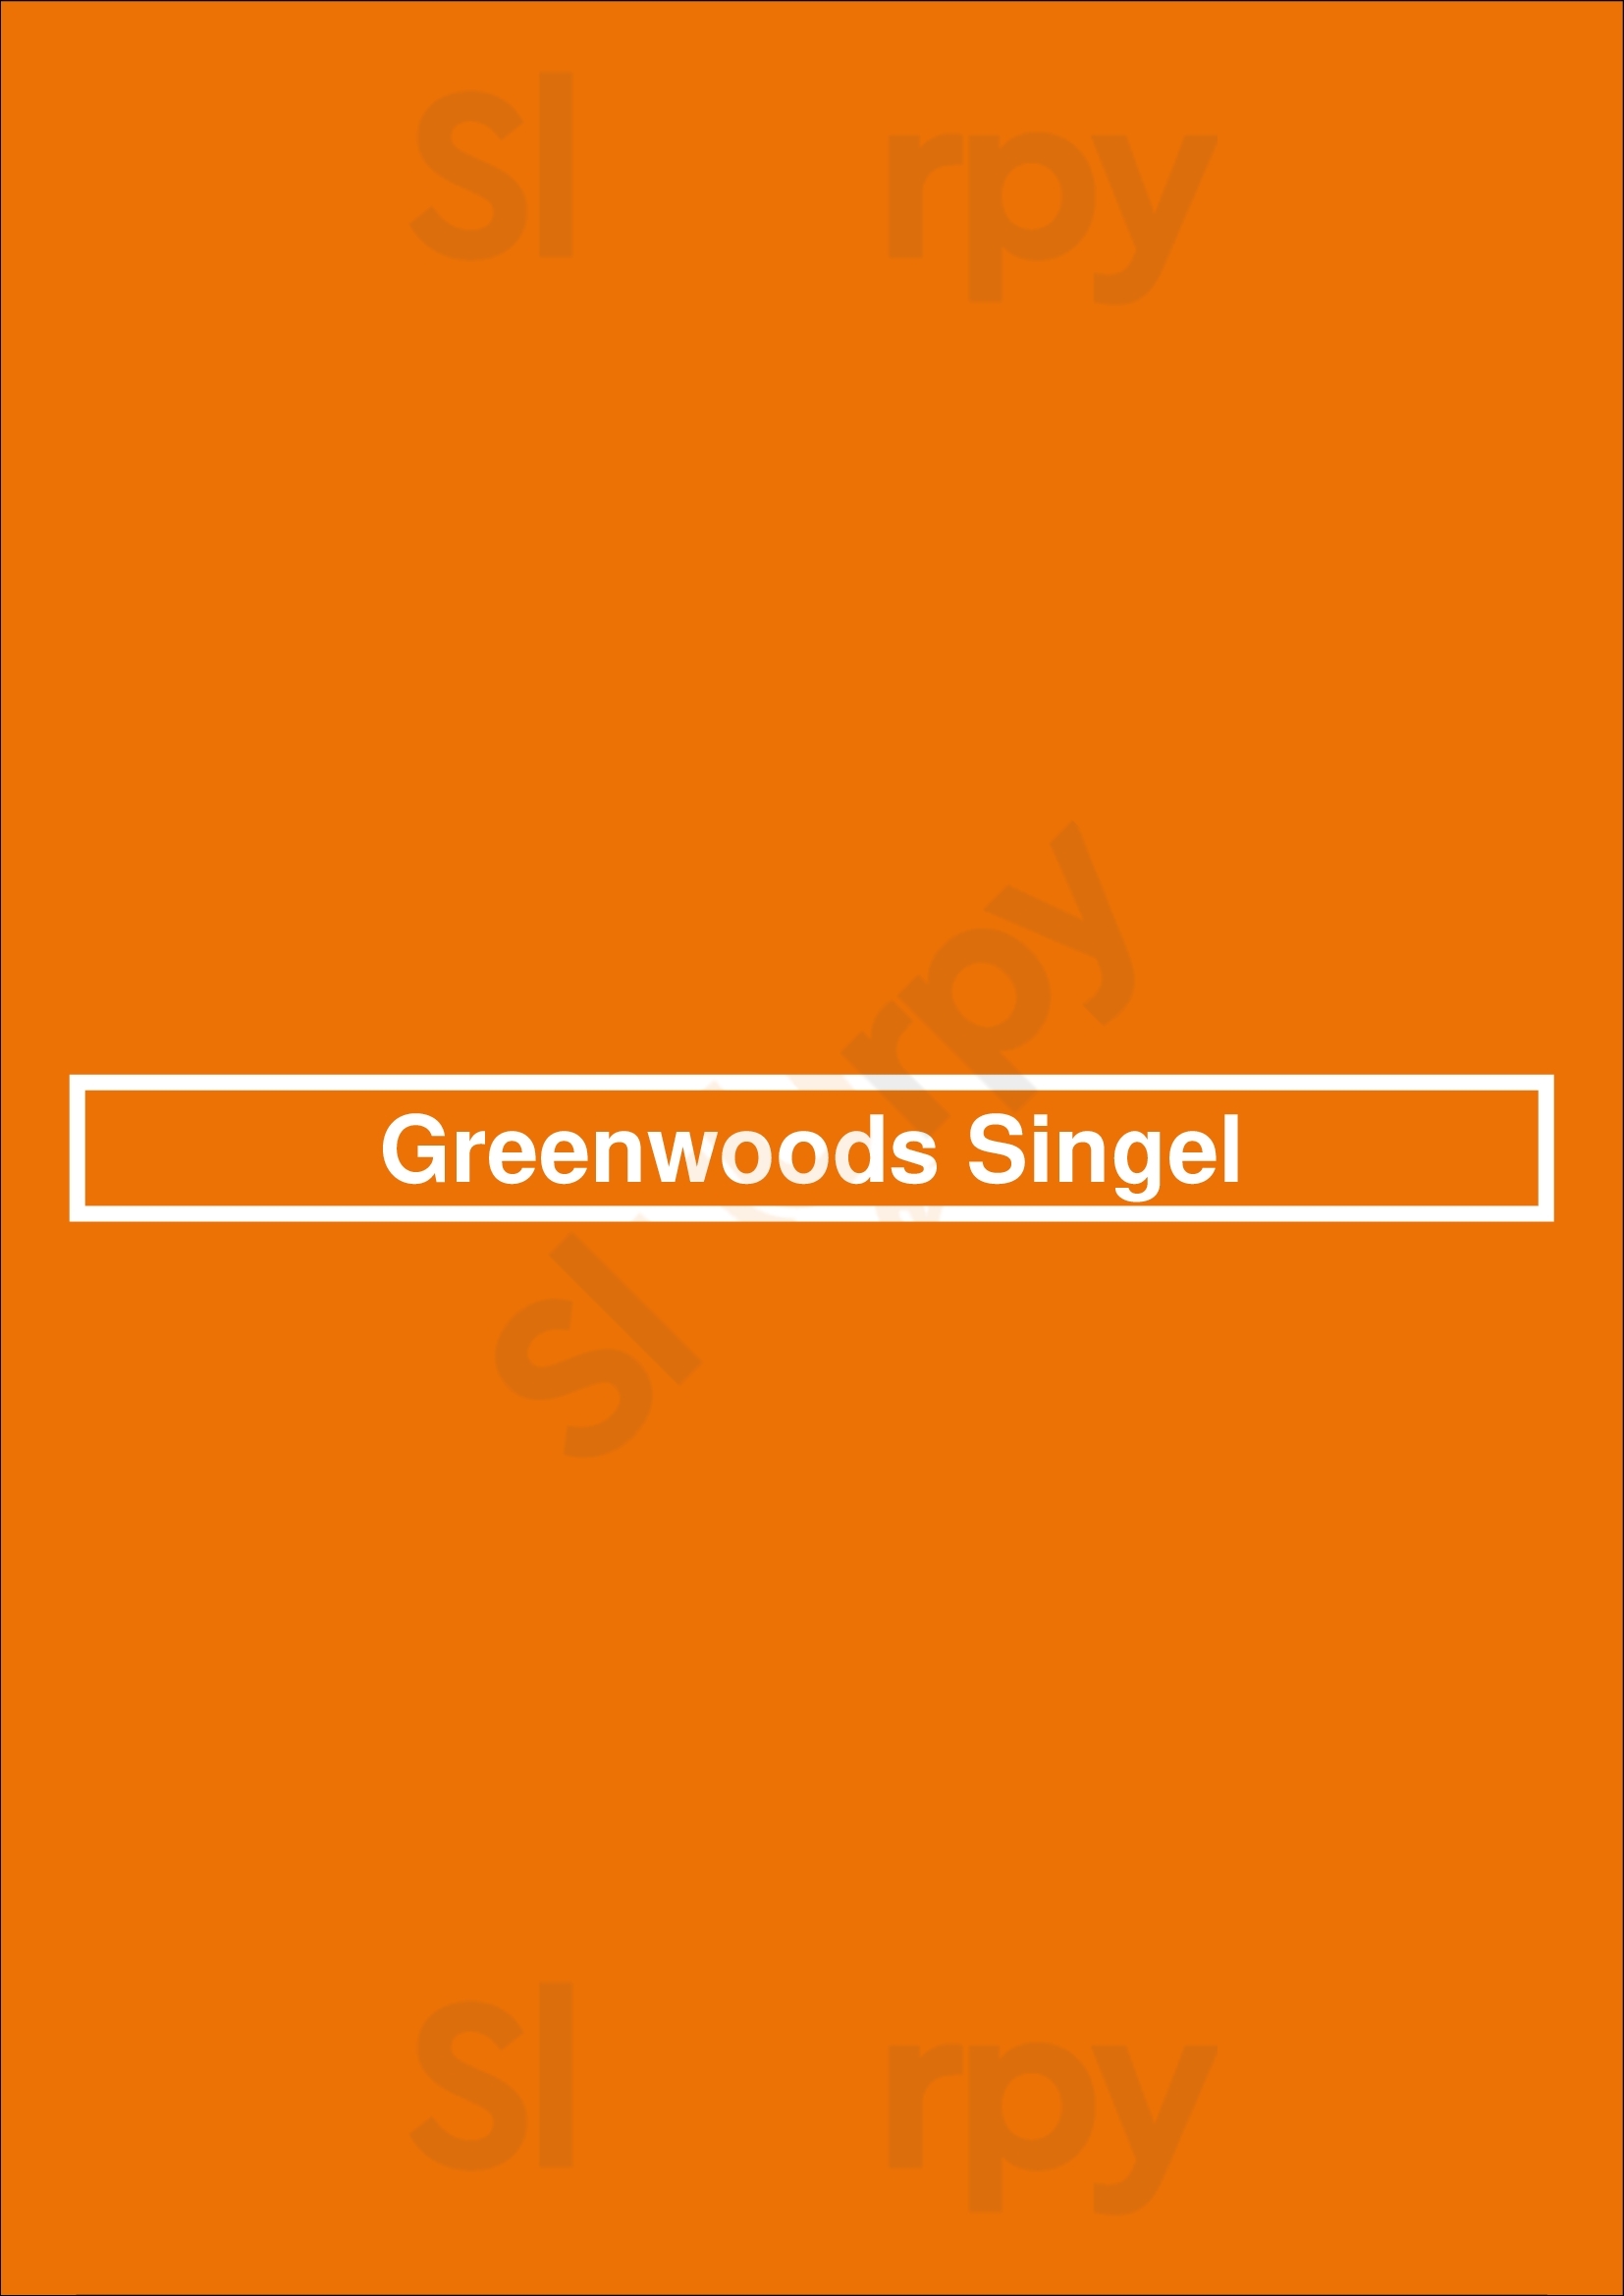 Greenwoods Singel Amsterdam Menu - 1